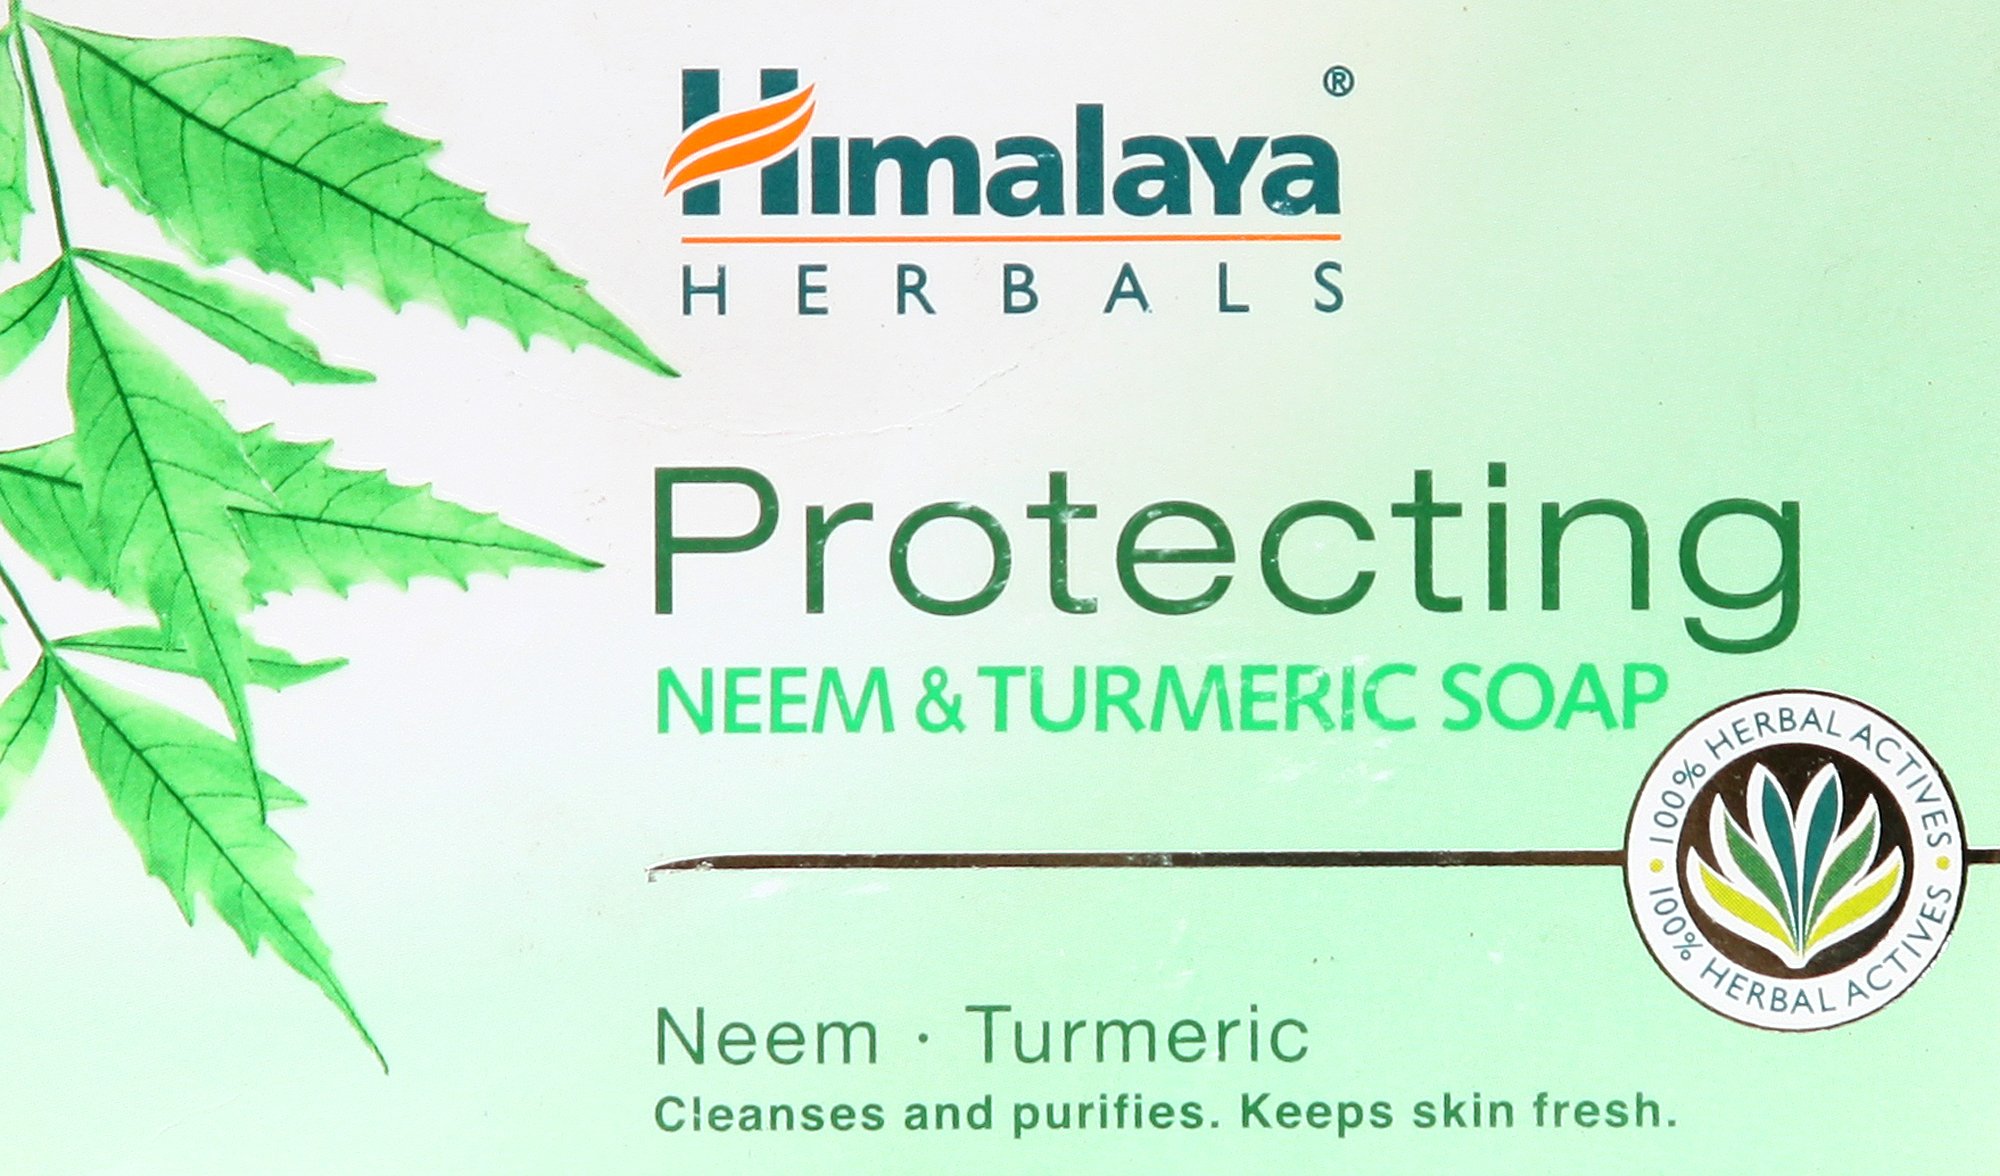 Himalaya Herbals Protecting Neem & Turmeric Soap - book cover